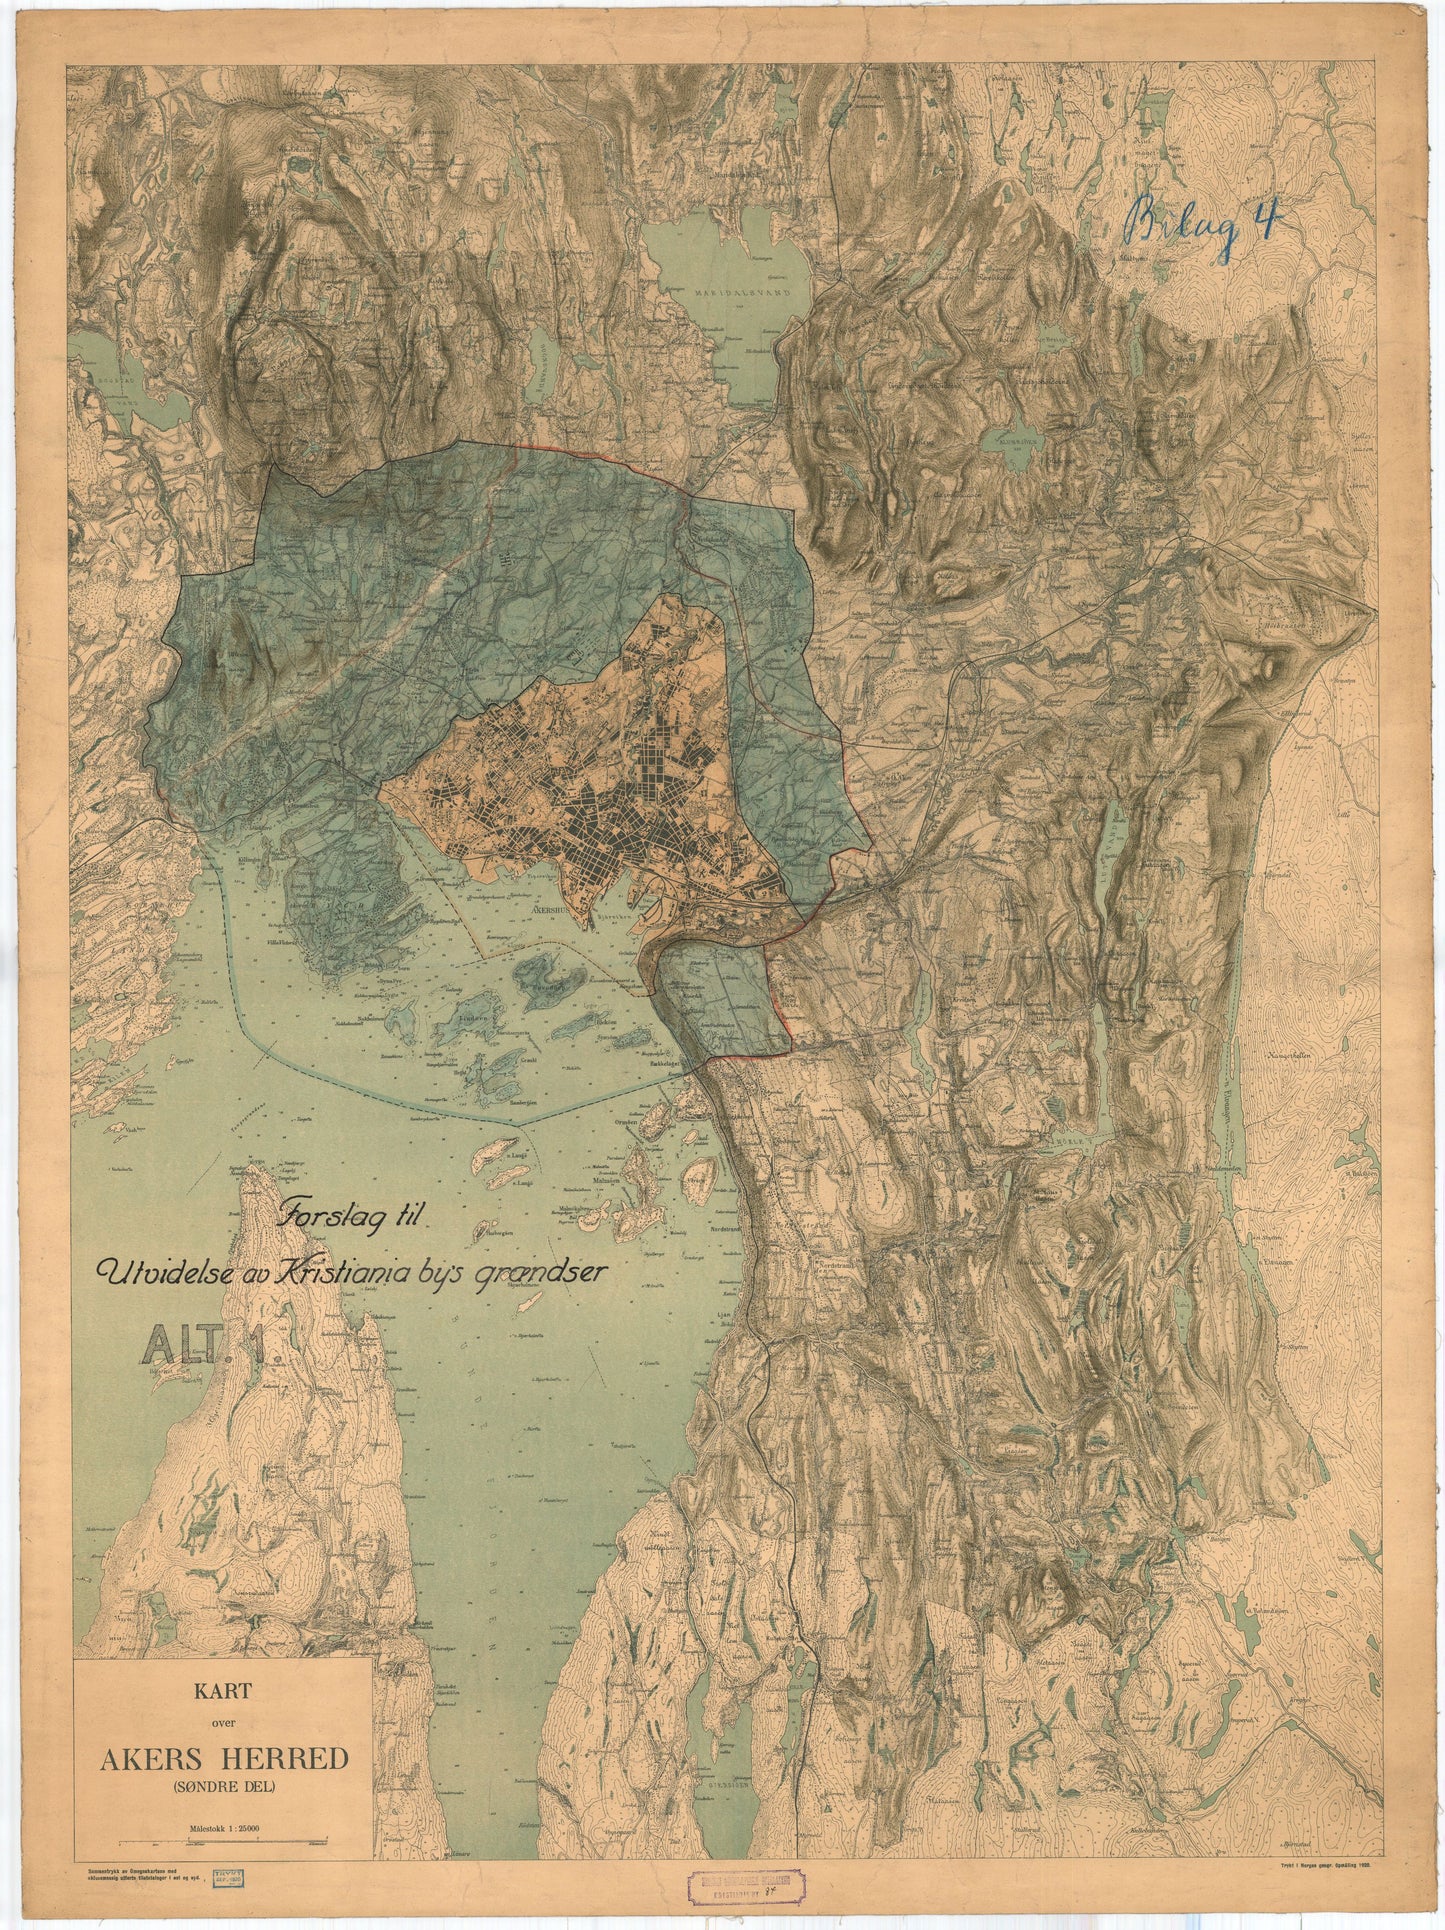 Kristiania 84-1 : Forslag til utvidelse av Kristiania bys grenser: Oslo